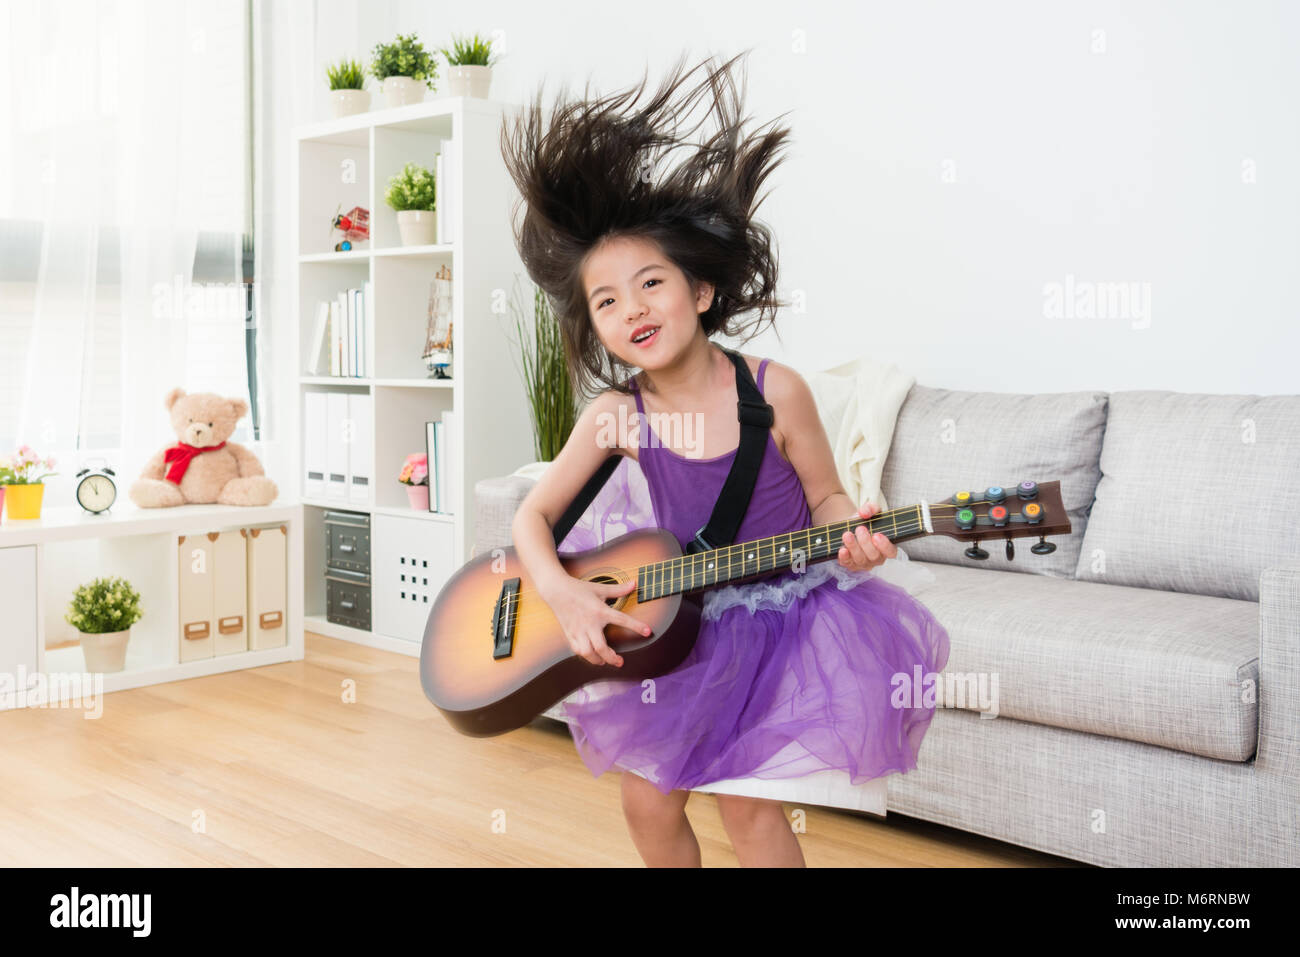 Kleine Mädchen Tochter Holding eine hölzerne Gitarre aufregend springt vom Sofa aus. Ihr Haar in die Luft. Freudige Konzept zu spielen. Stockfoto